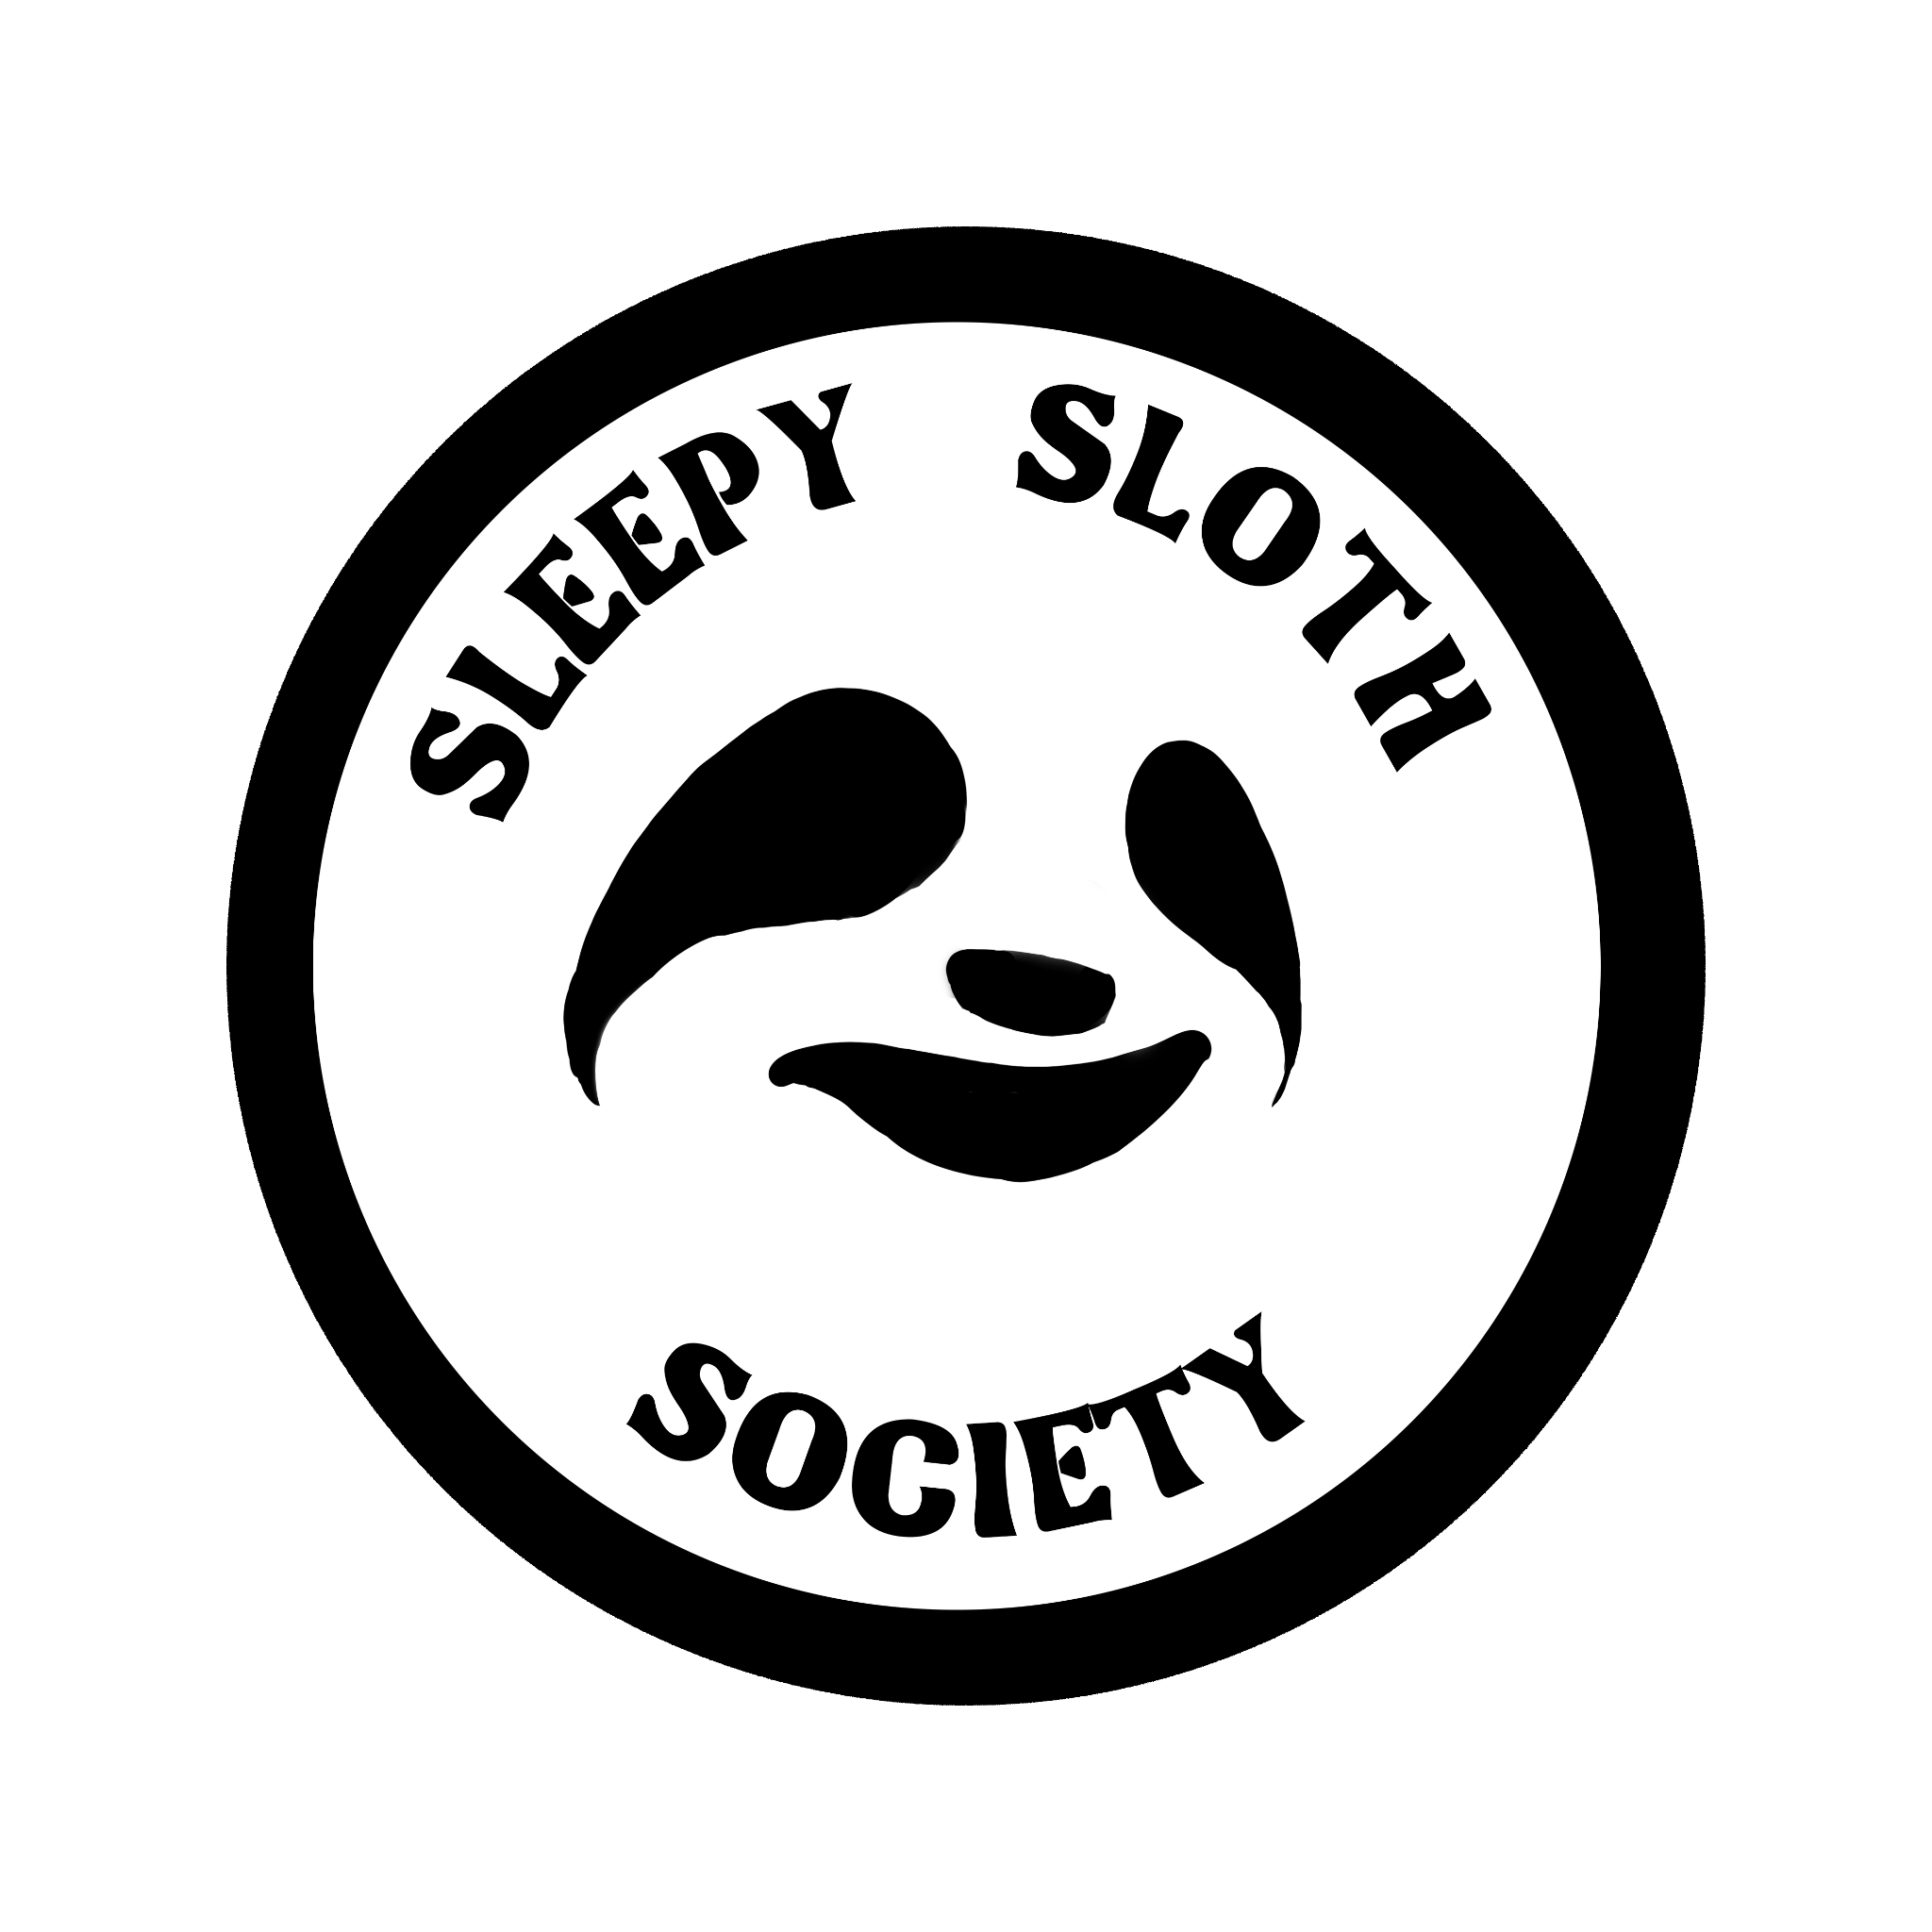 sleepy sloth society